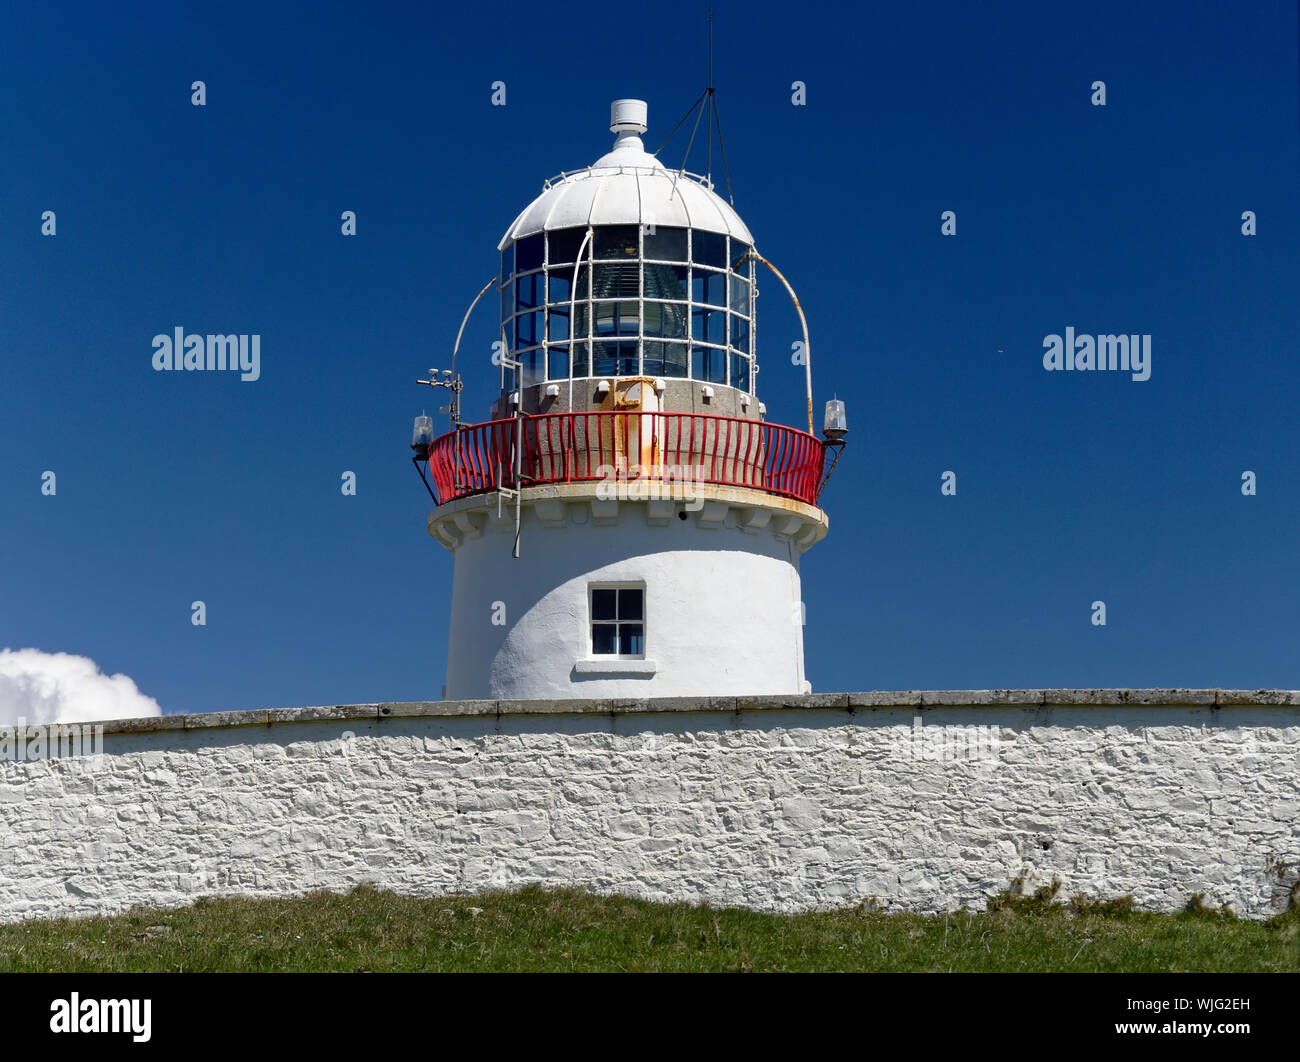 St John's Point, dans le comté de Donegal, Irlande - Mai 21st, 2019 - phare blanc blanc derrière le mur en pierre en face d'un ciel bleu clair Banque D'Images